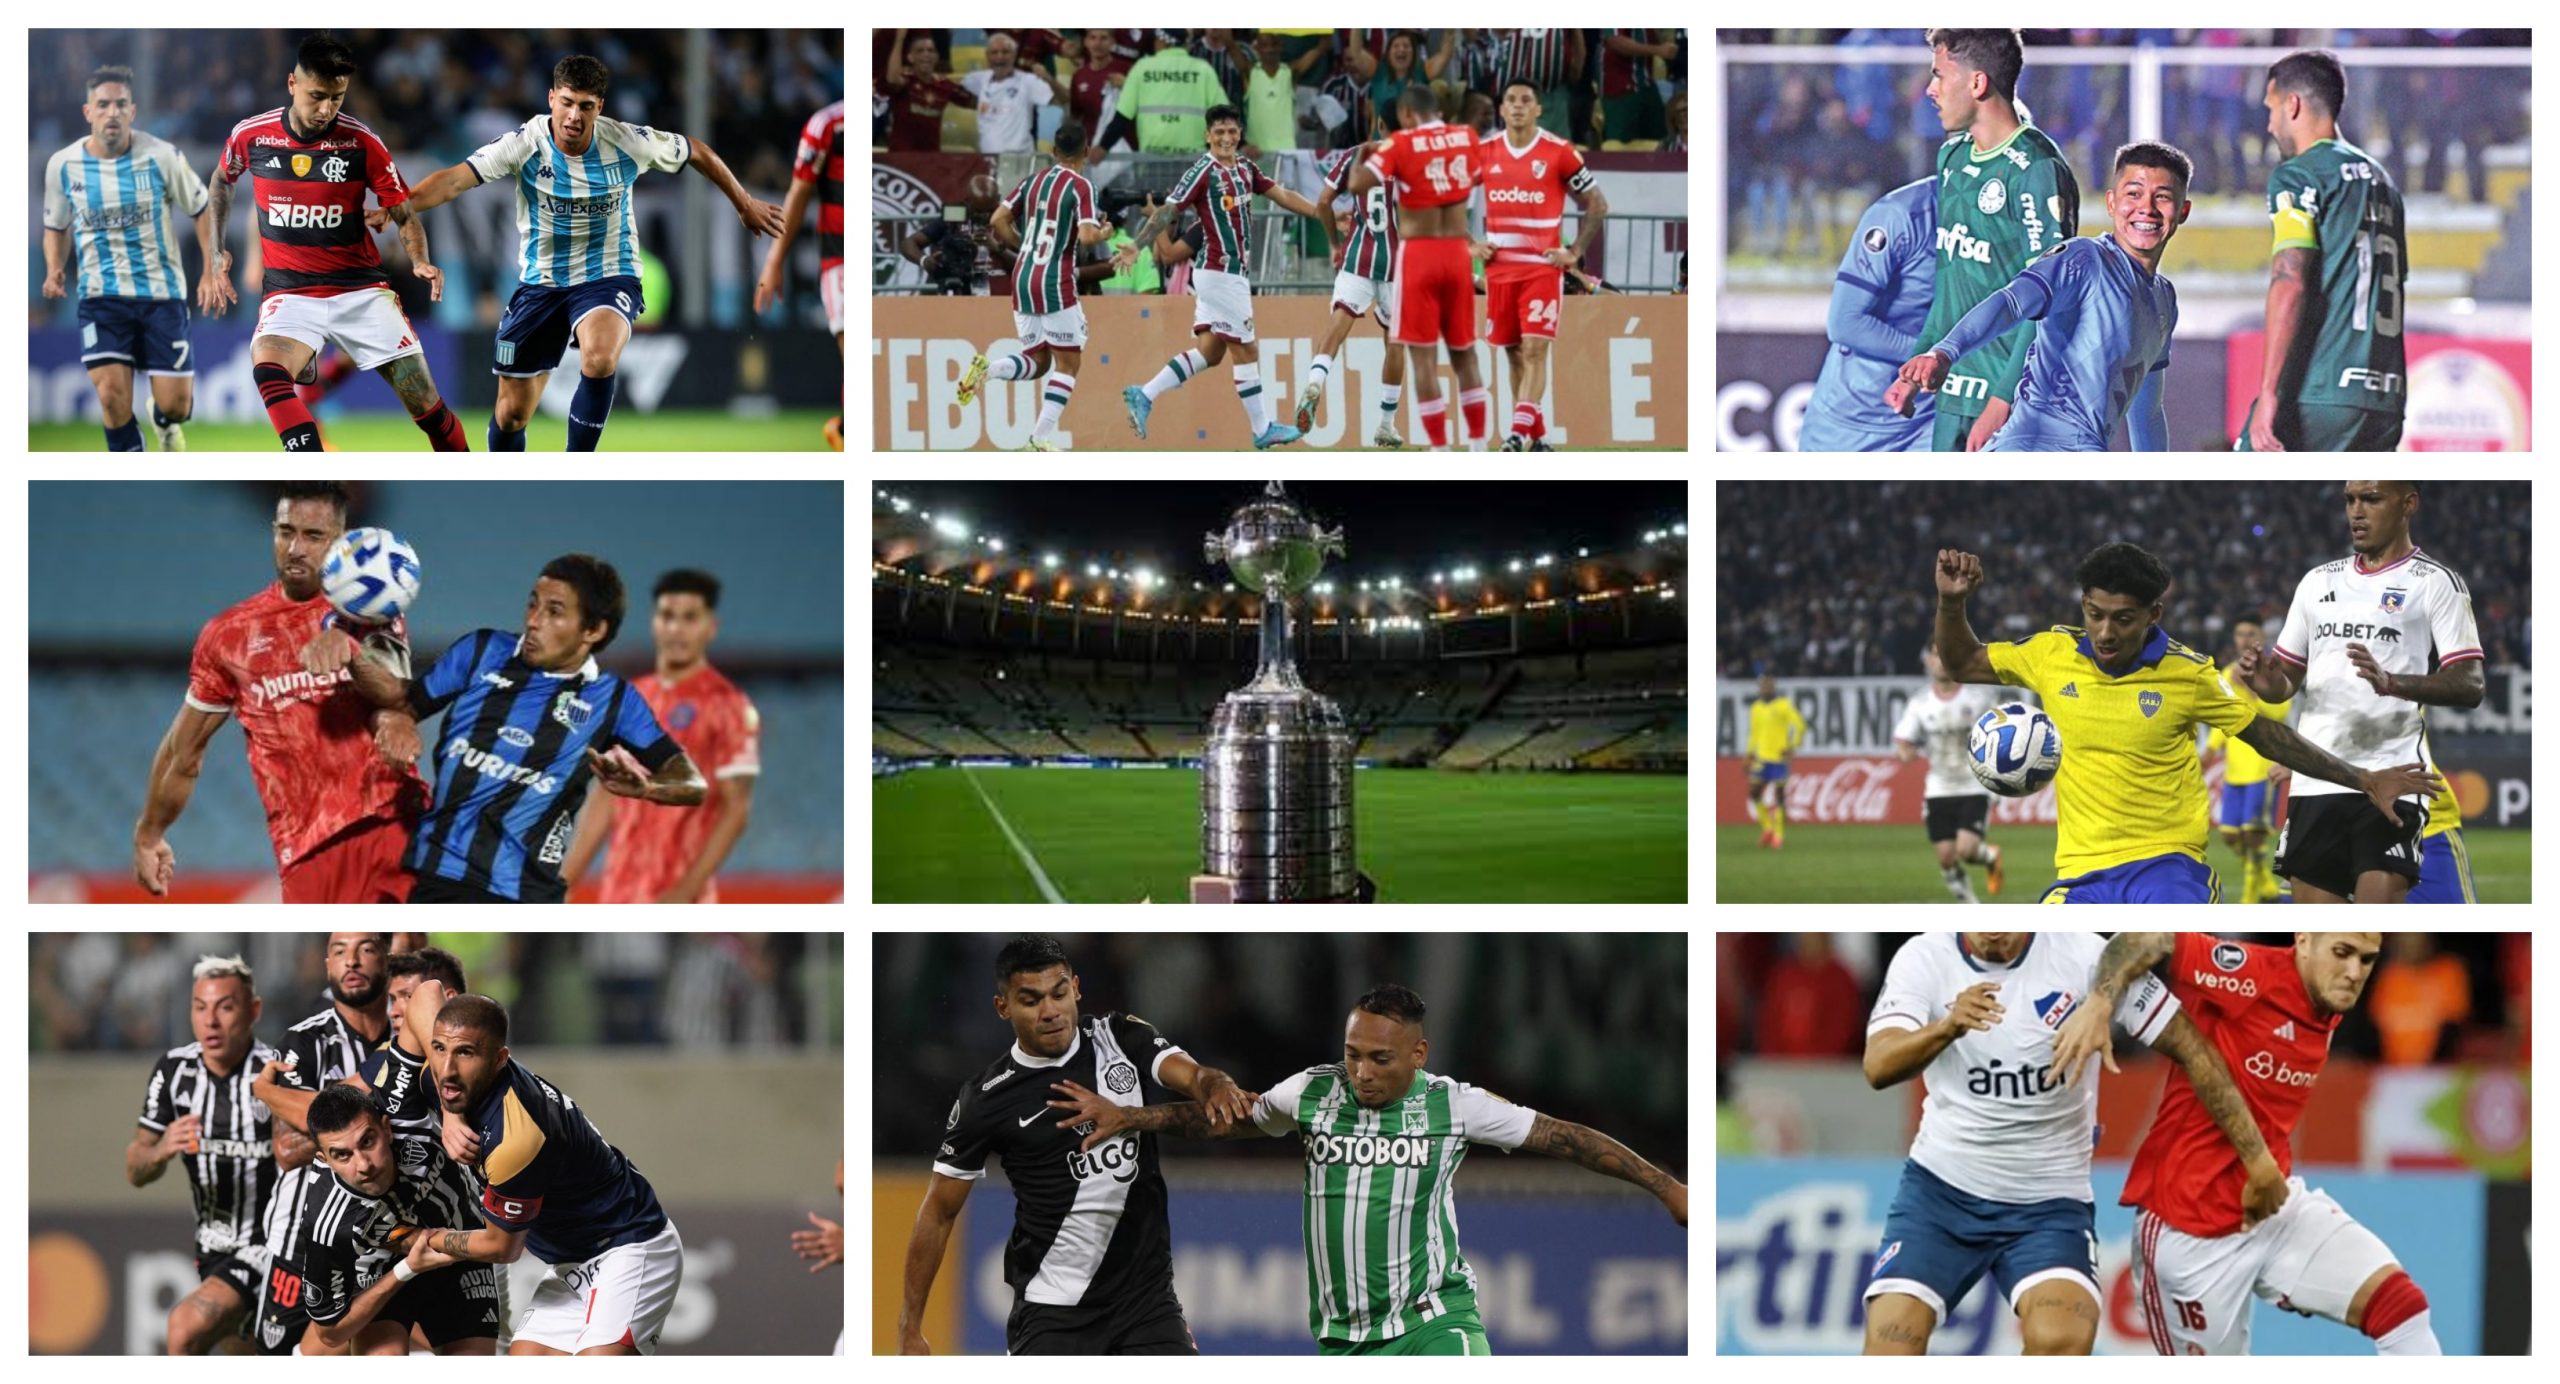 Semana de Copa Libertadores, todos los resultados y posiciones de la jornada 5